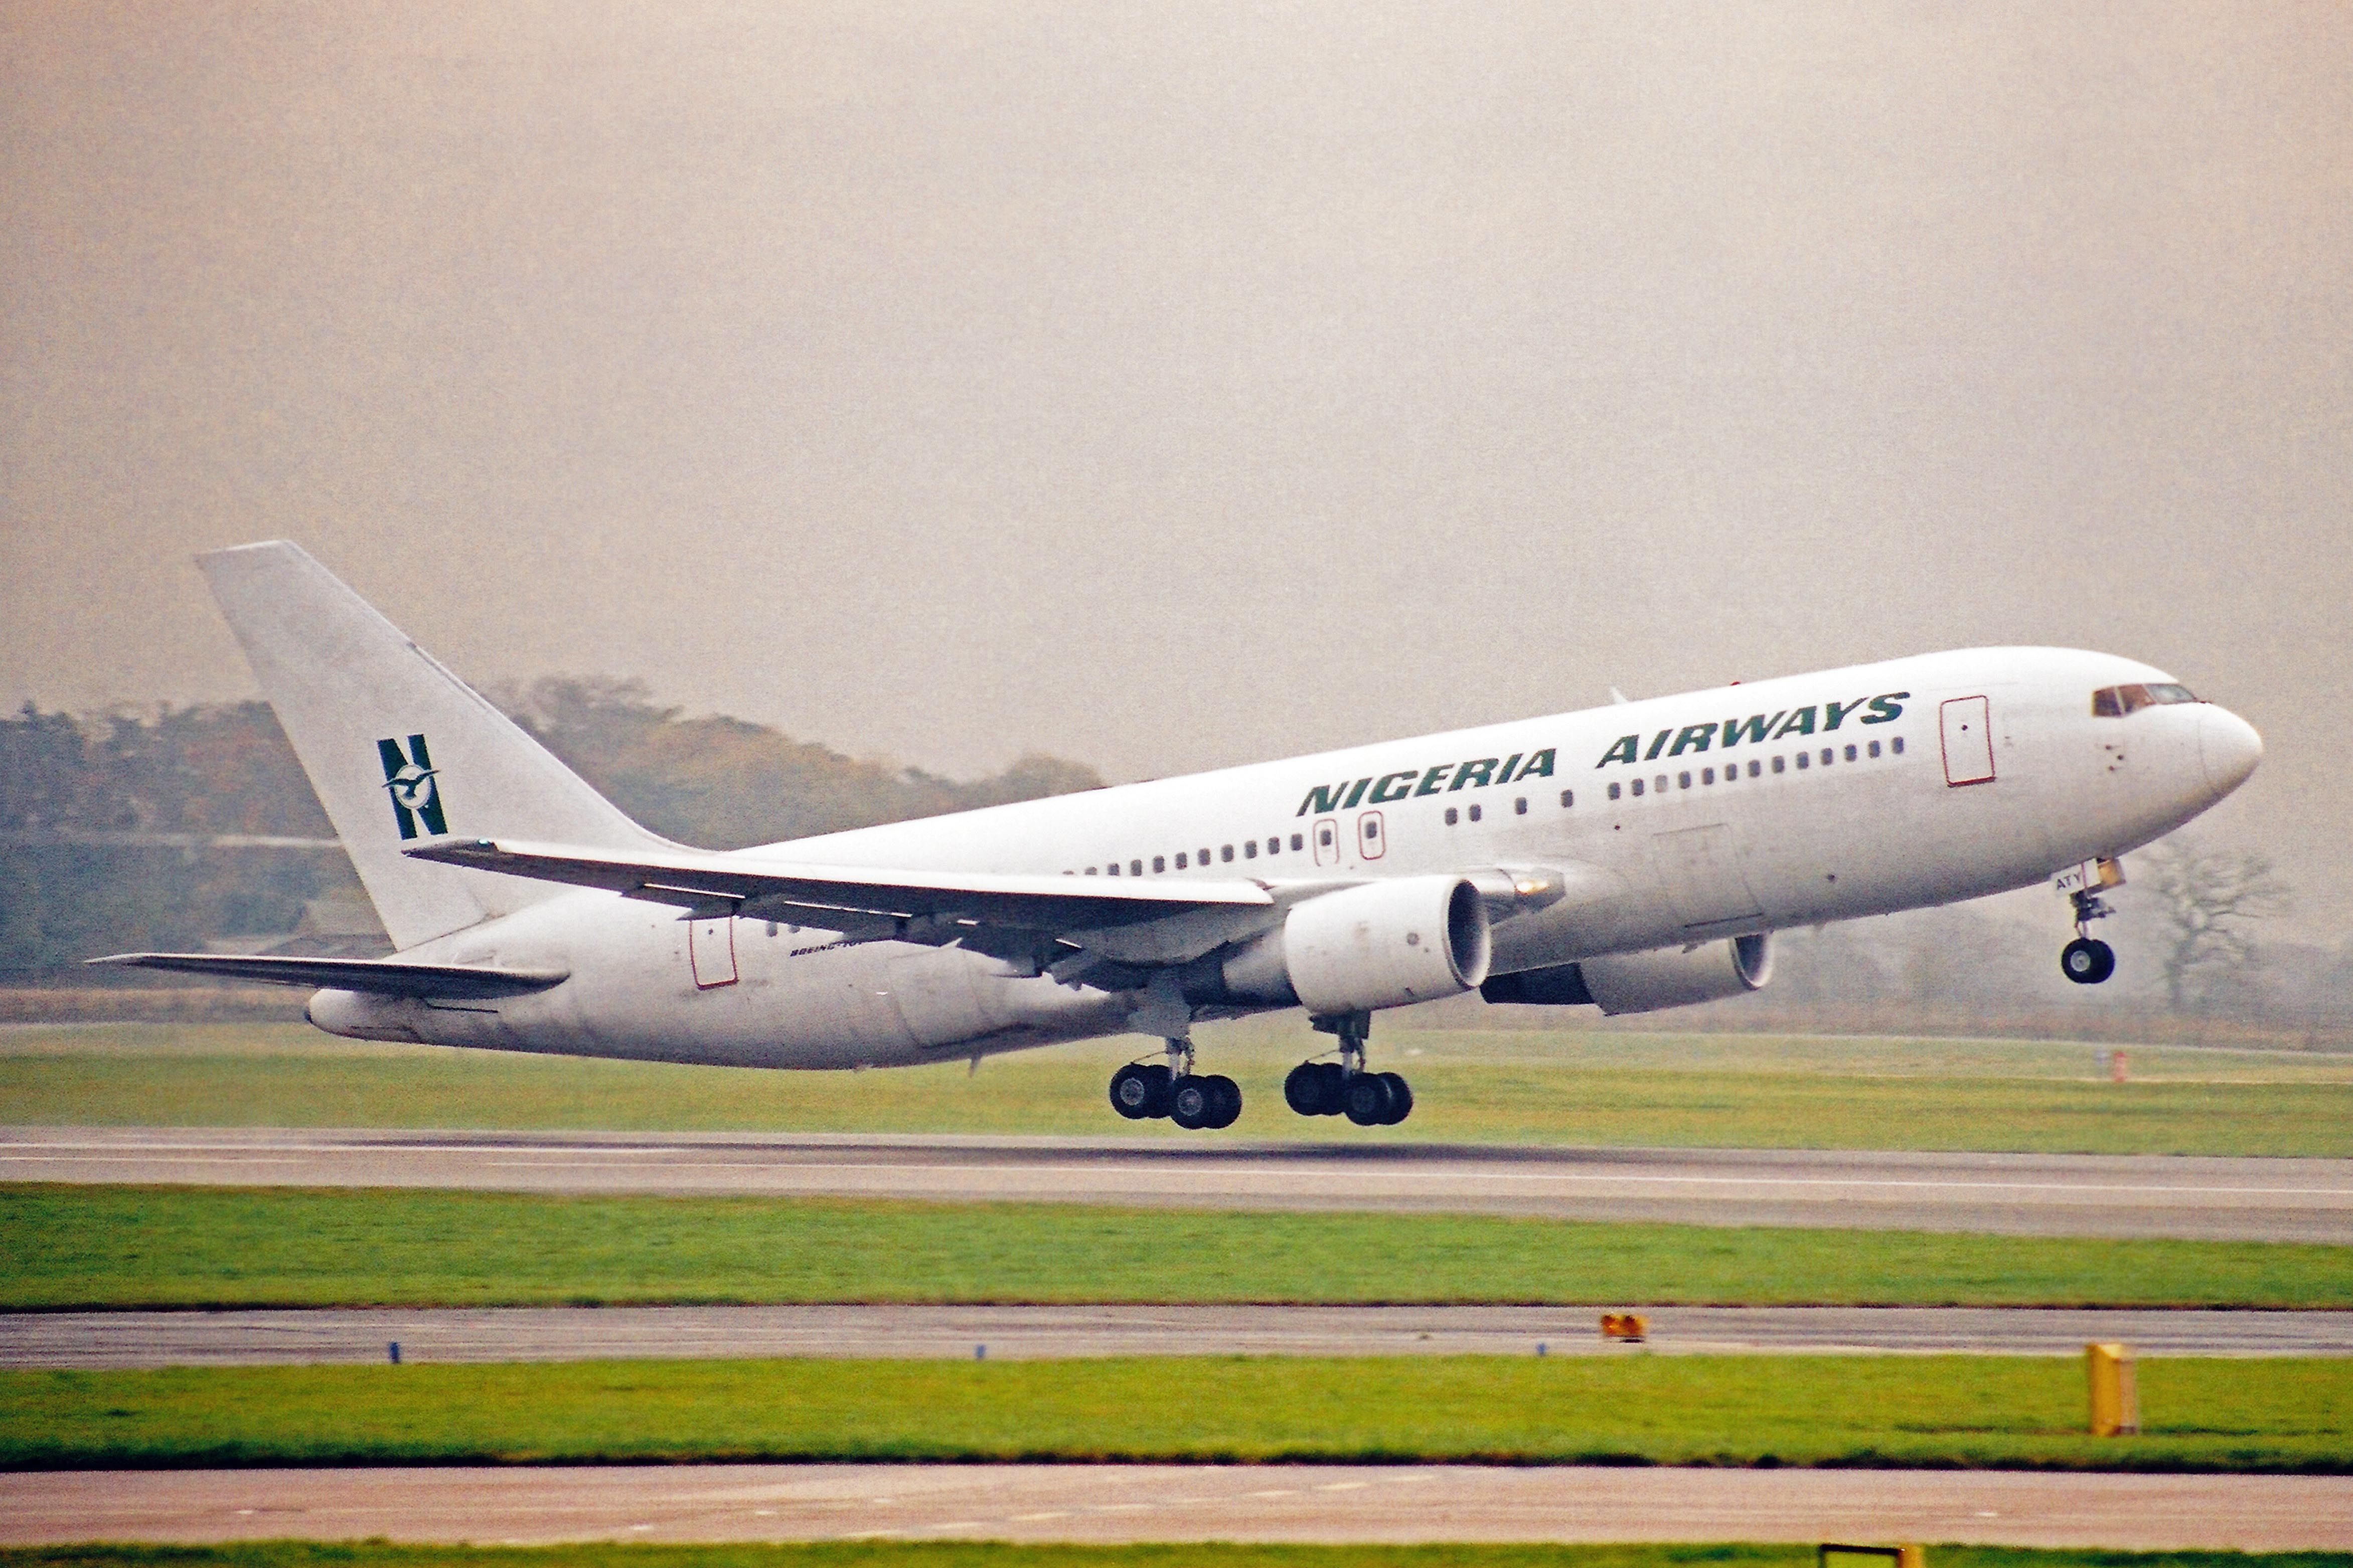 Nigeria Airways Boeing 767